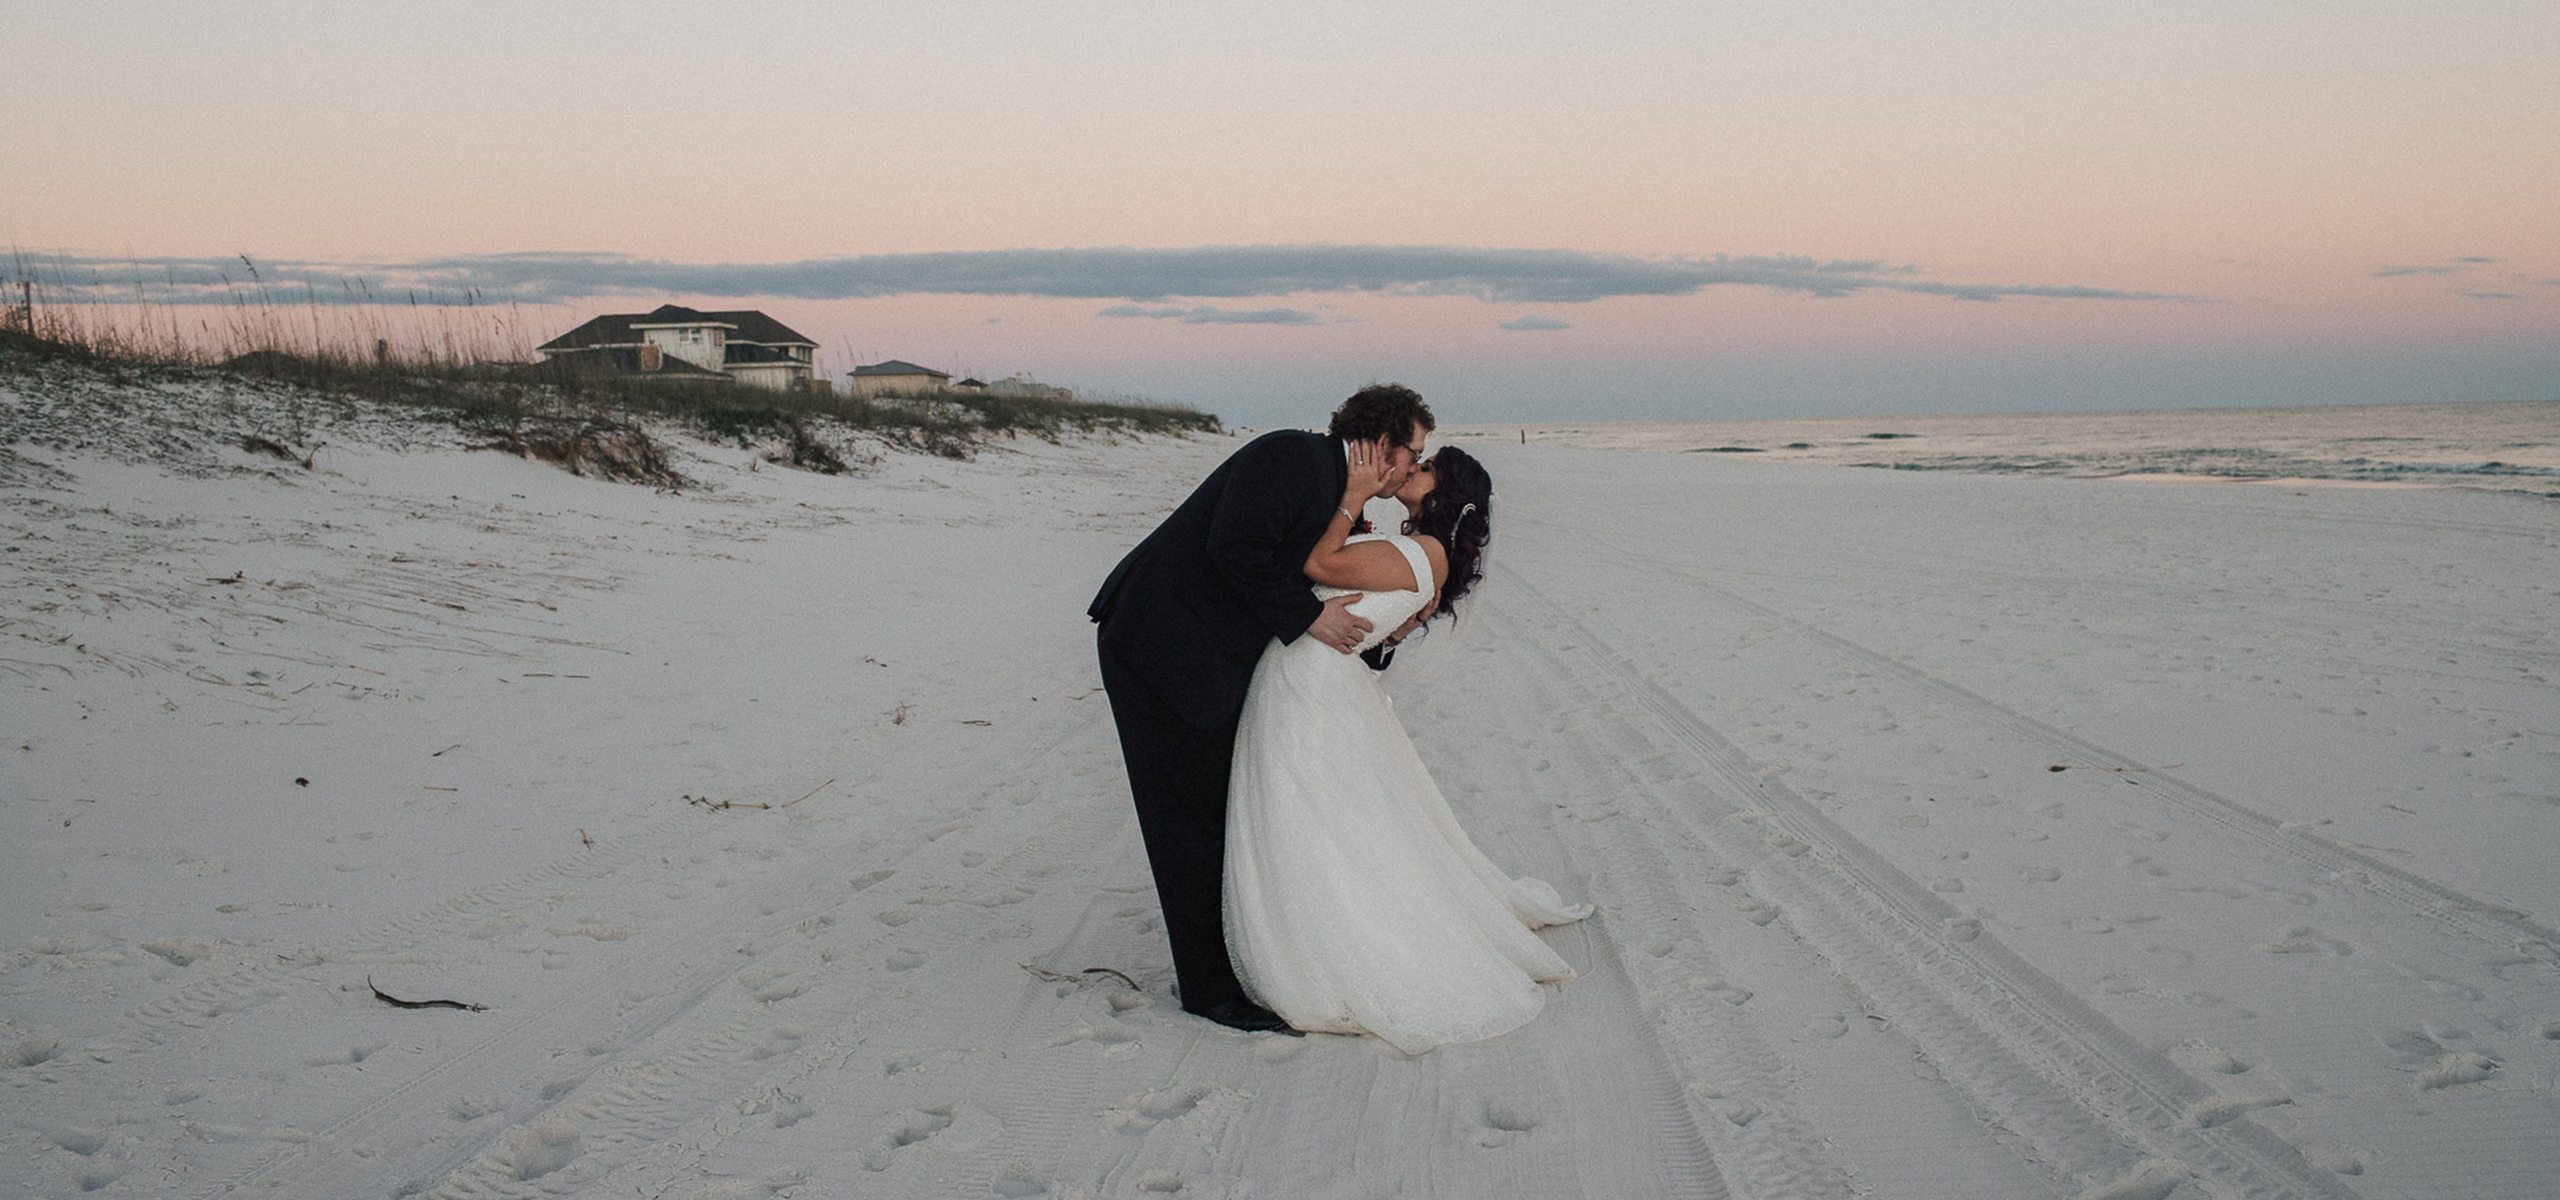 Sarasota Florida Wedding Photography + Elopement Photography